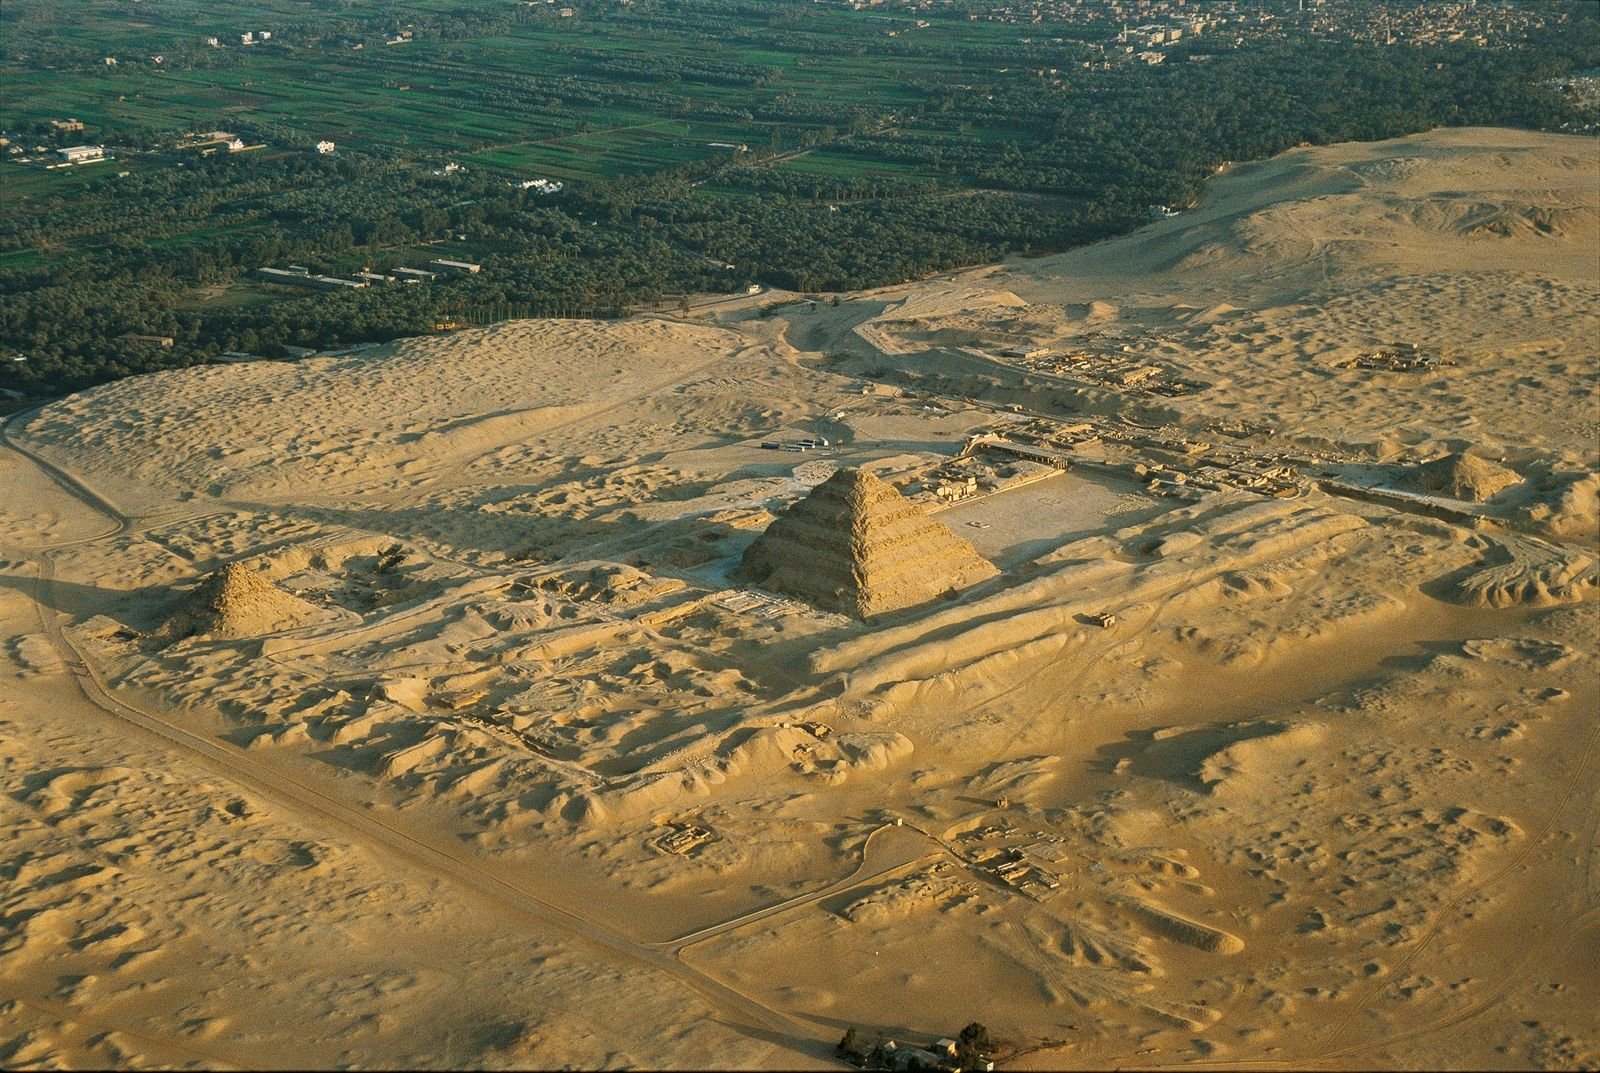 Découverte de 59 sarcophages parfaitement conservés dans la nécropole de Saqqarah